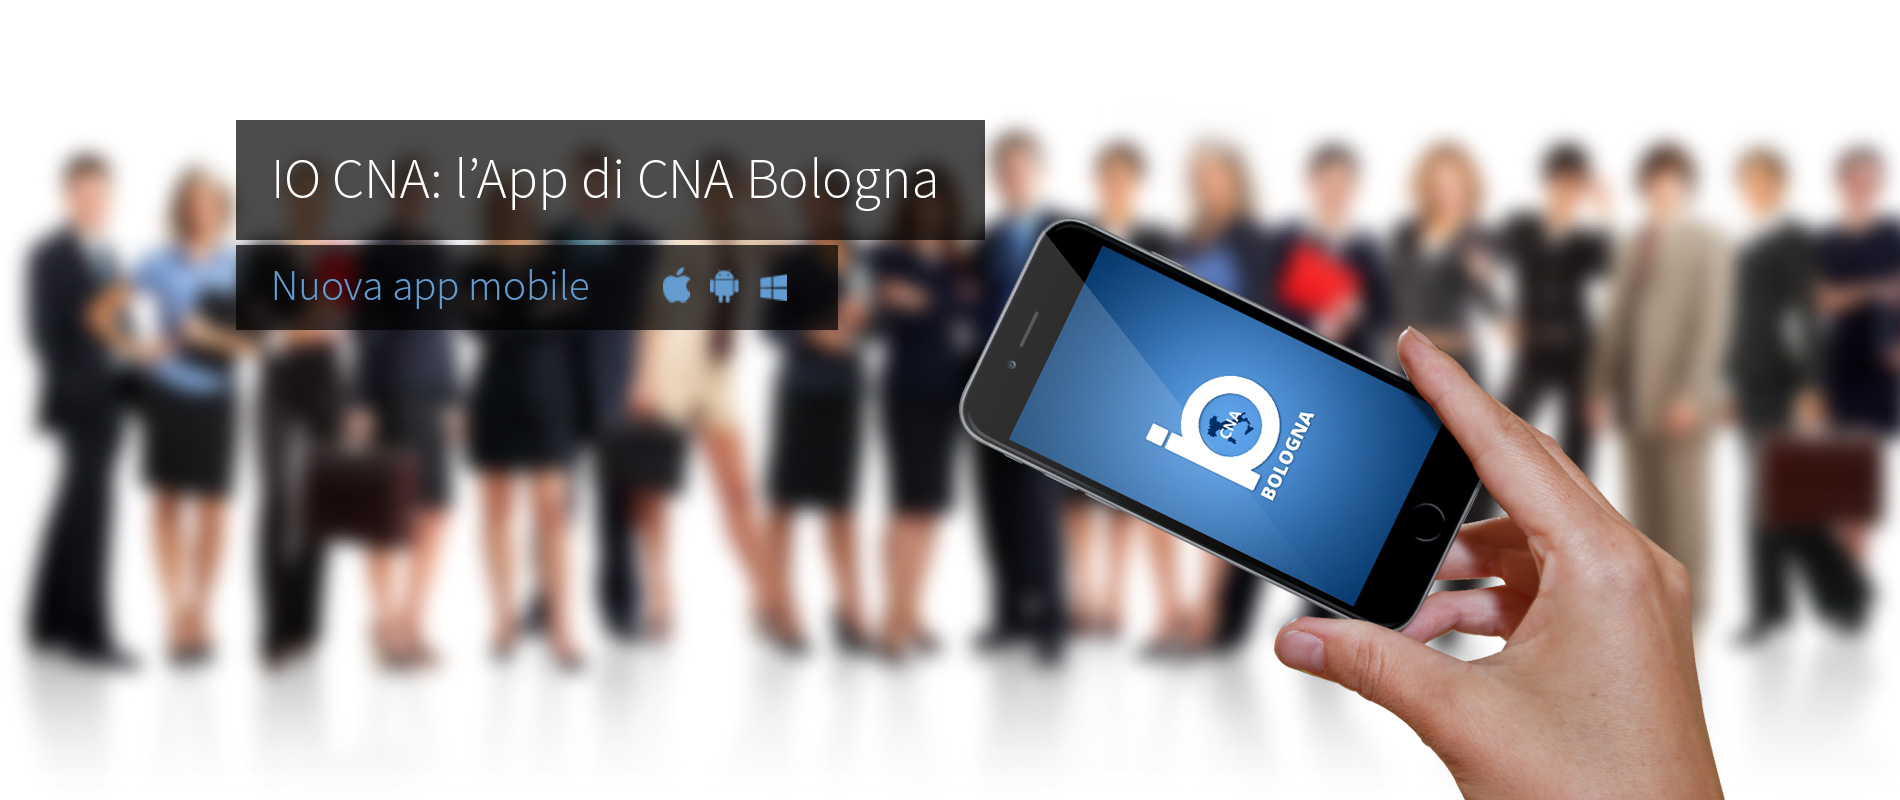 BSD@Software rilascia l'app IO CNA di CNA Bologna